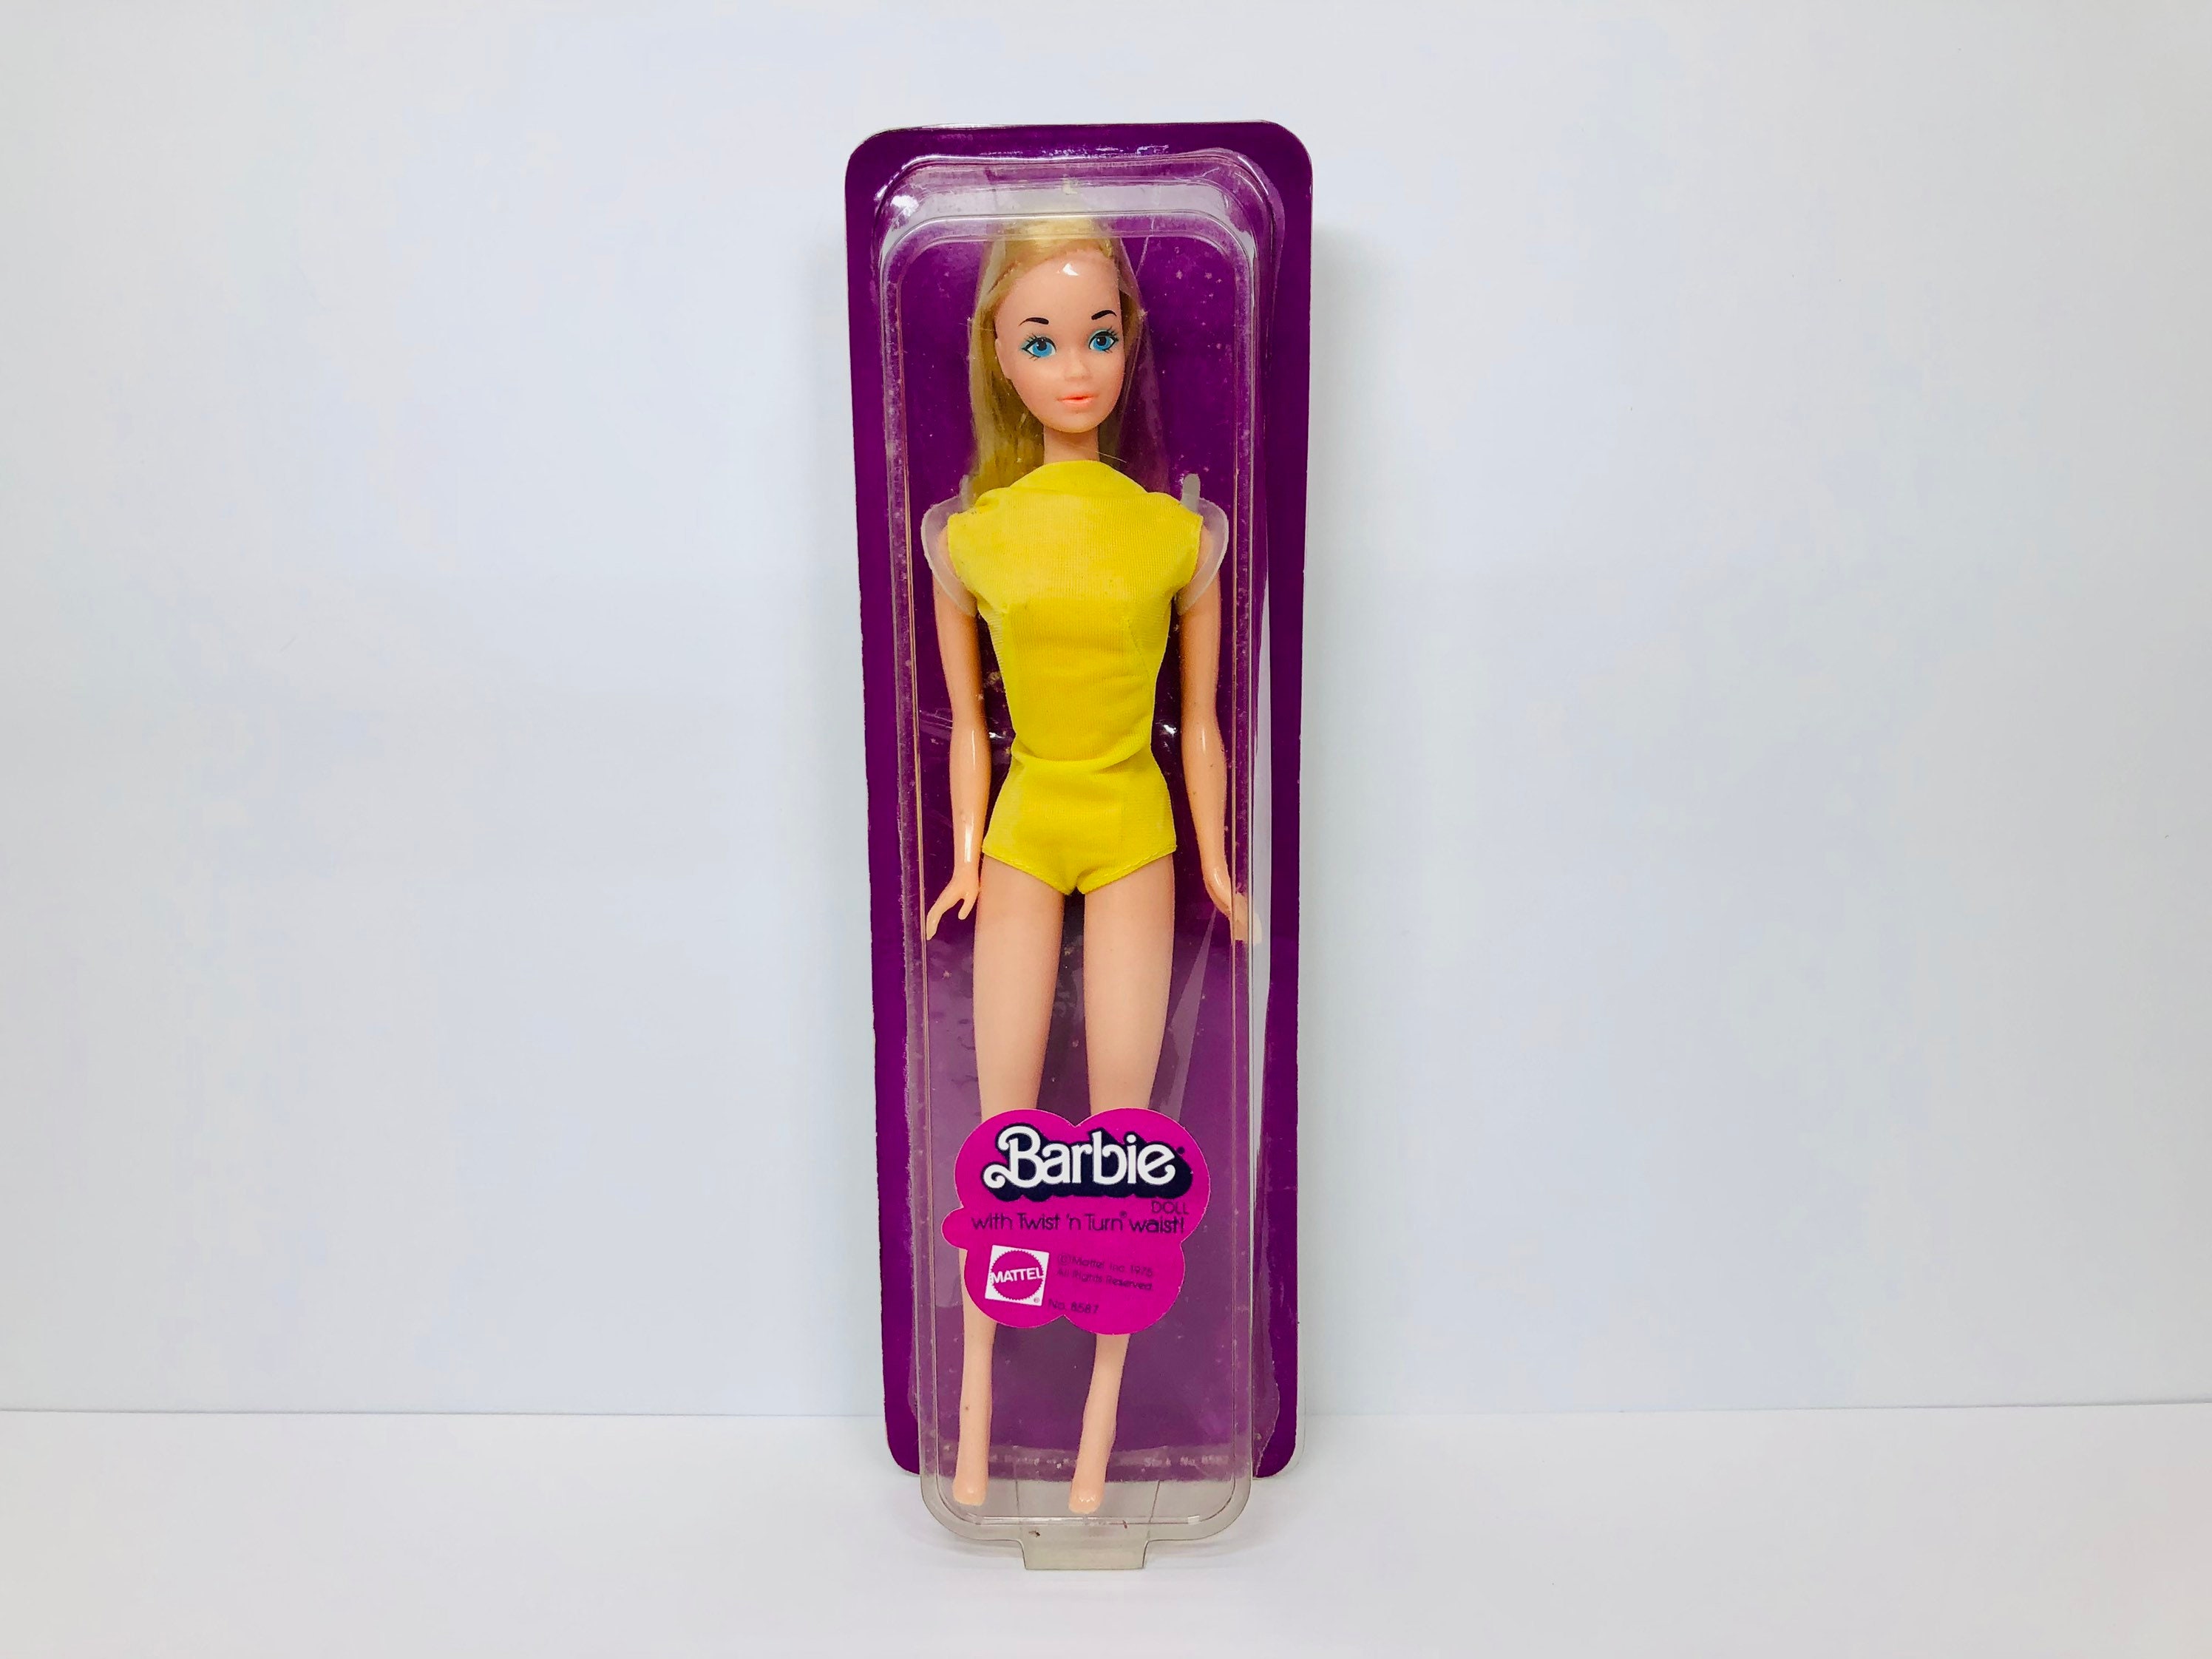 Bot basketbal Politie Vintage 1975 Barbie Twist 'n Turn Waist Barbie in Box 8587 - Etsy